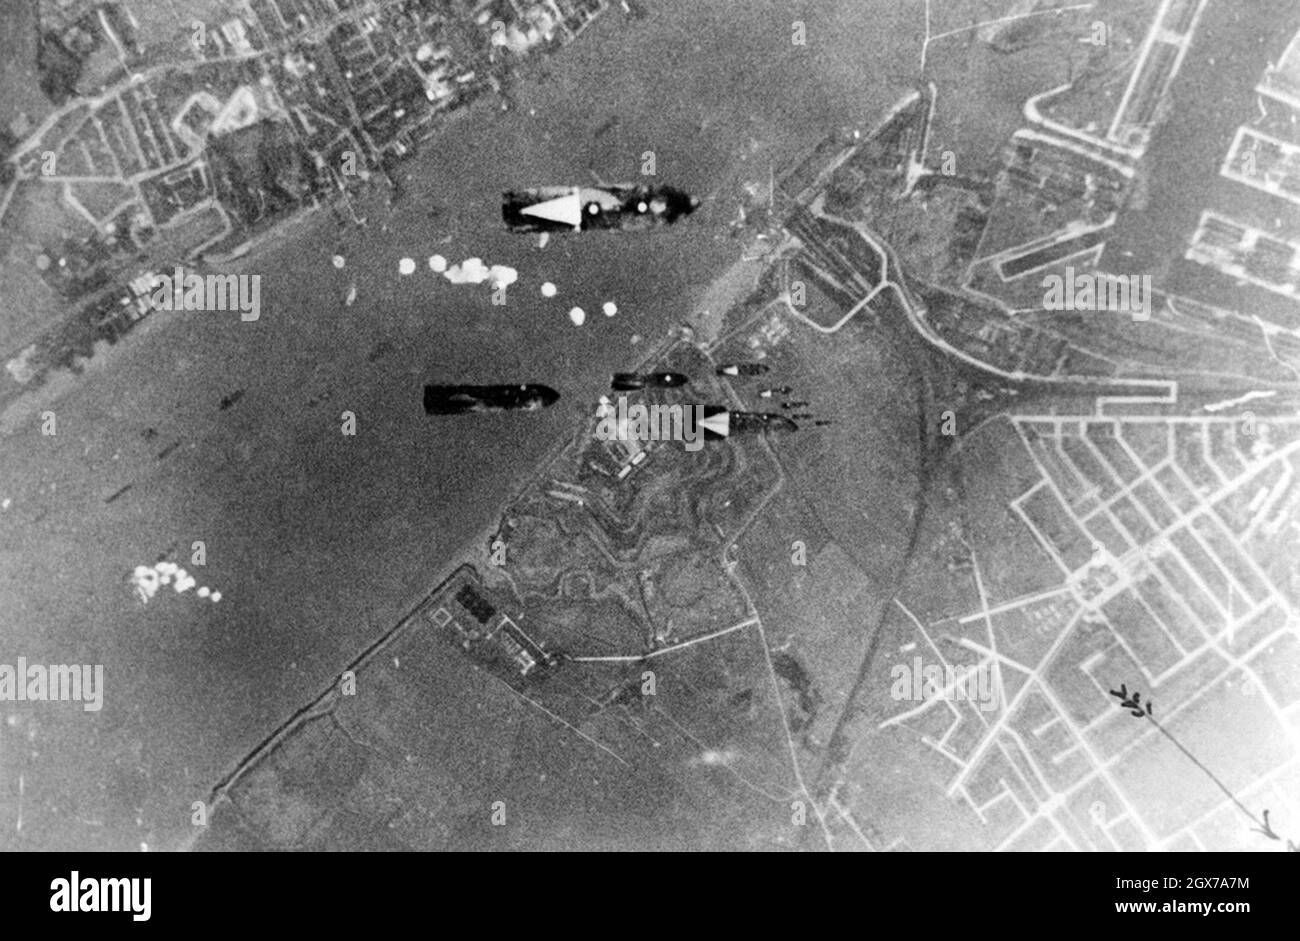 Des bombes allemandes larguées sur le port de Tilbury, le 4 octobre 1940. Le premier groupe de bombes frappera les navires de la Tamise, le second frappera les quais. Banque D'Images